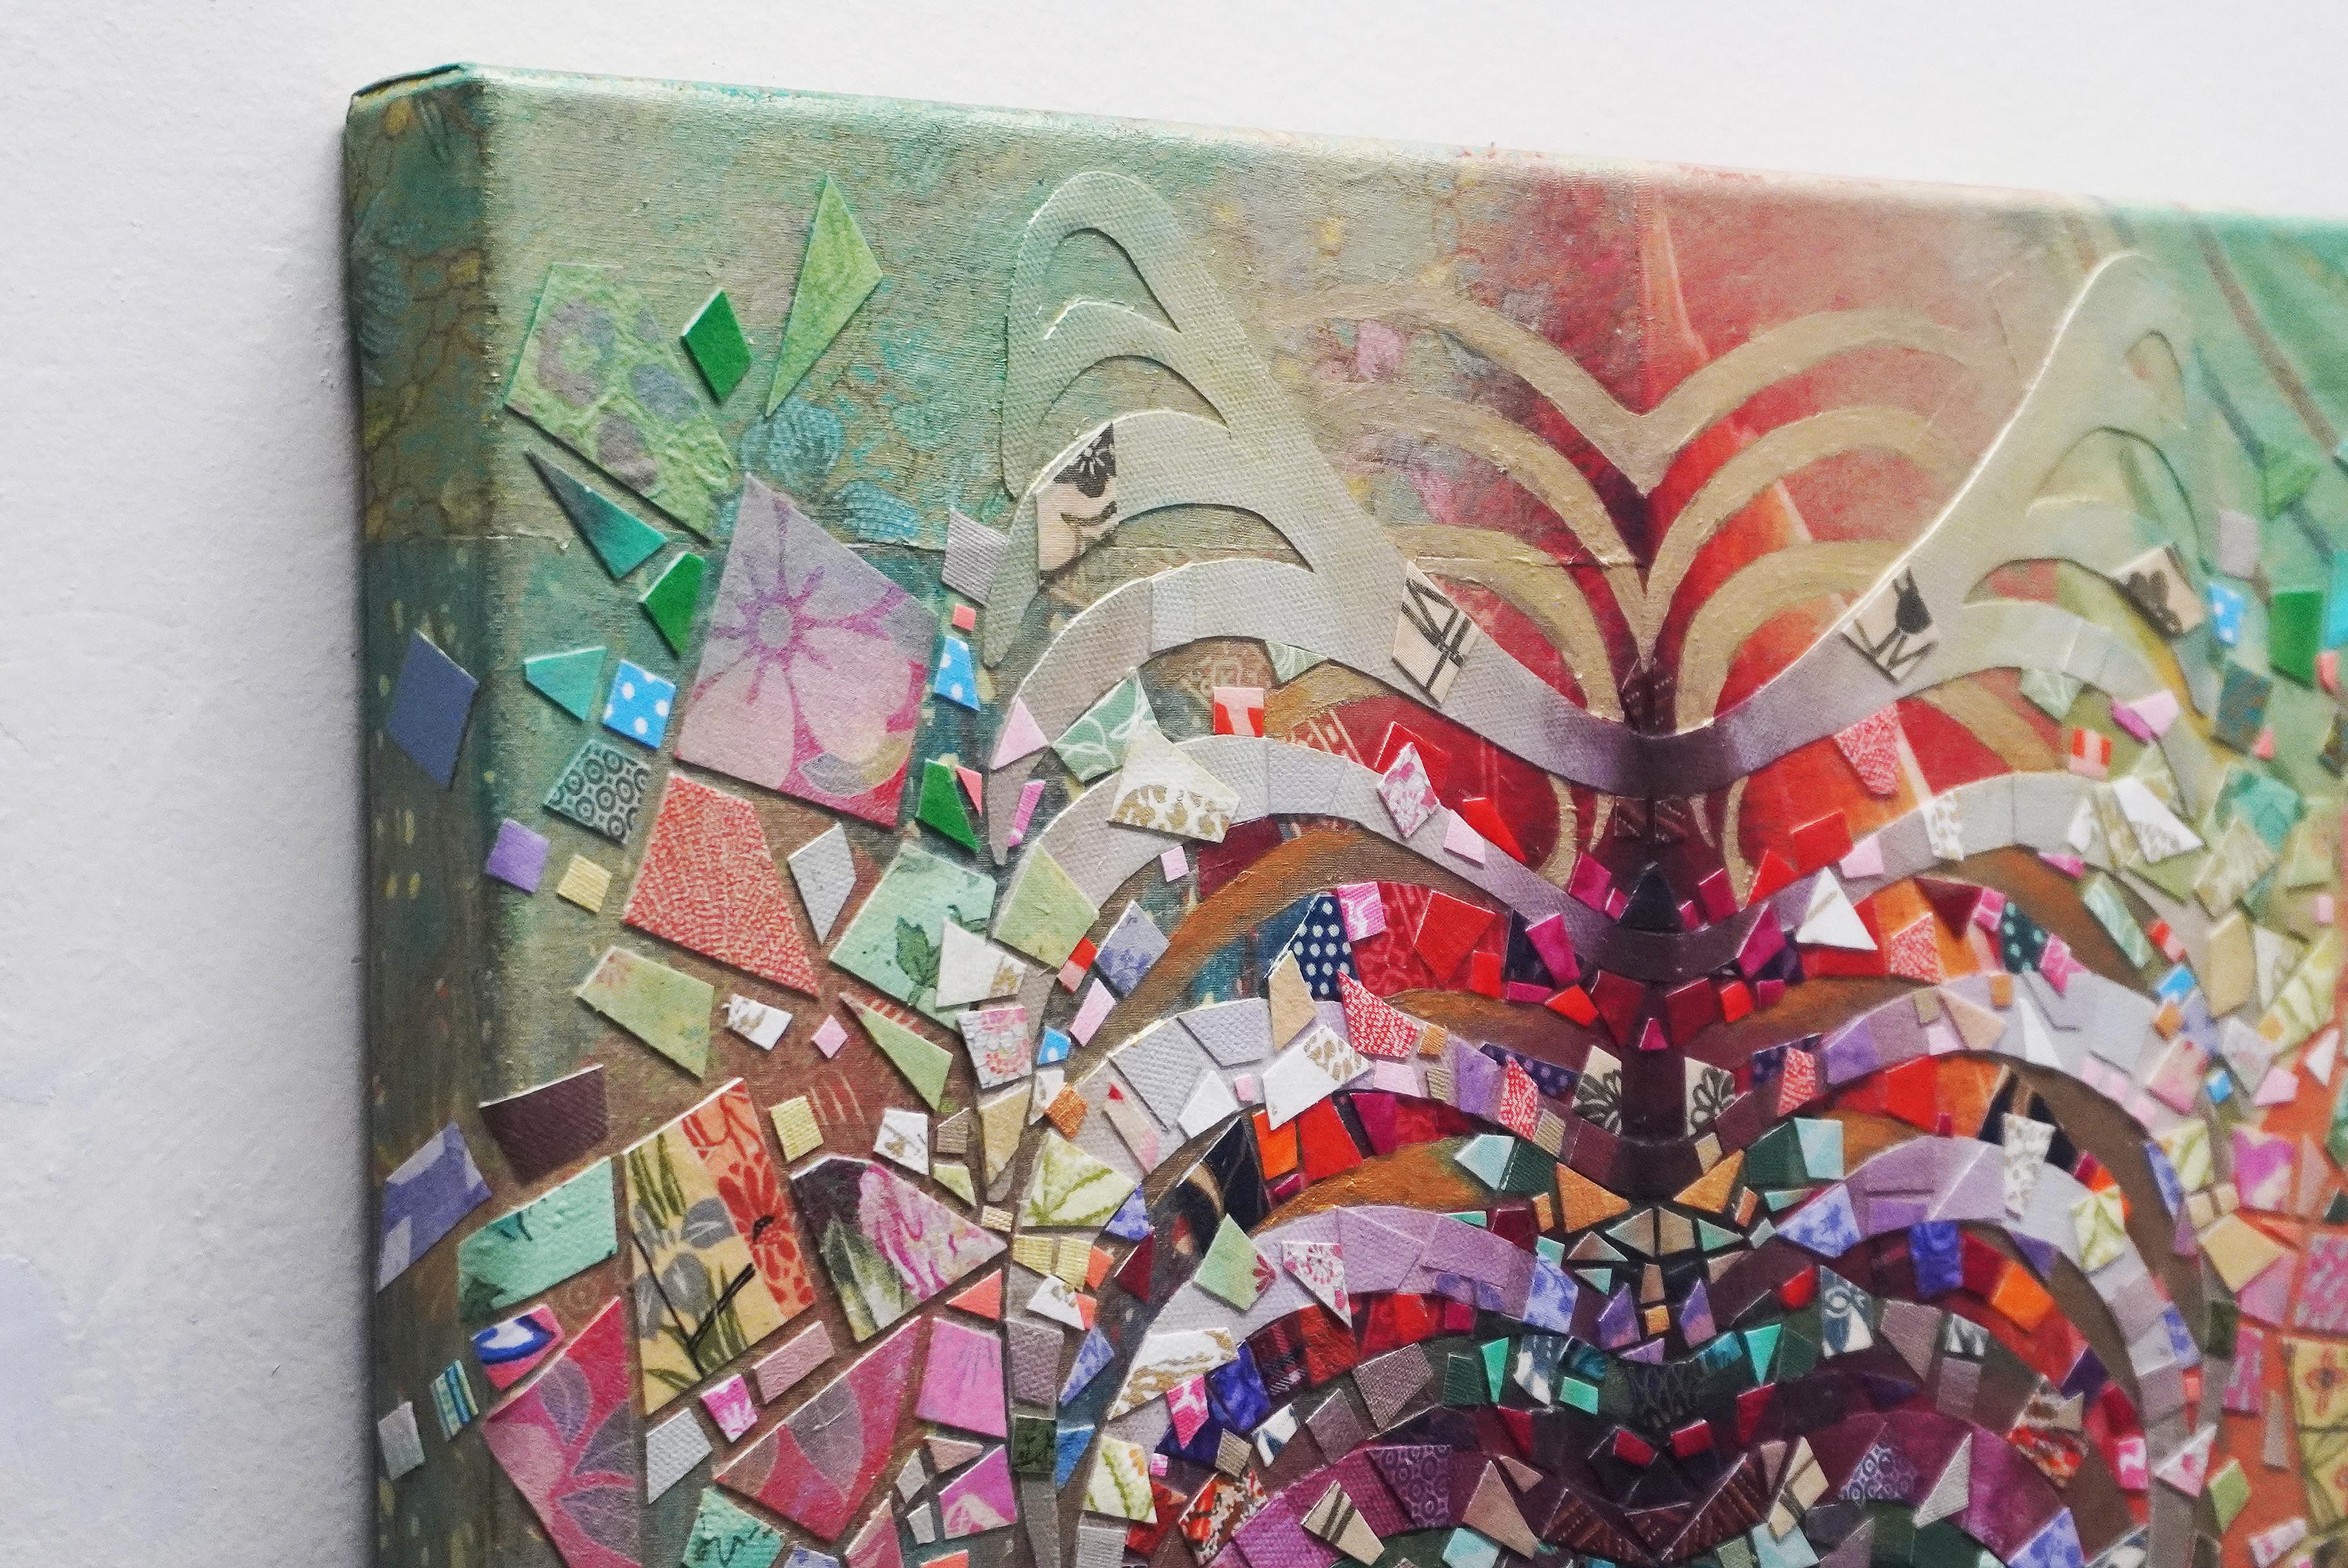 Collage en techniques mixtes de Tomo Mori.

Tomo Mori est un artiste d'origine japonaise qui vit à New York. Son travail a été exposé à Scope Miami, Flux Art Fair, Rush Art, Gallery Aferro et Laundromat Project. Sa passion pour l'art public a